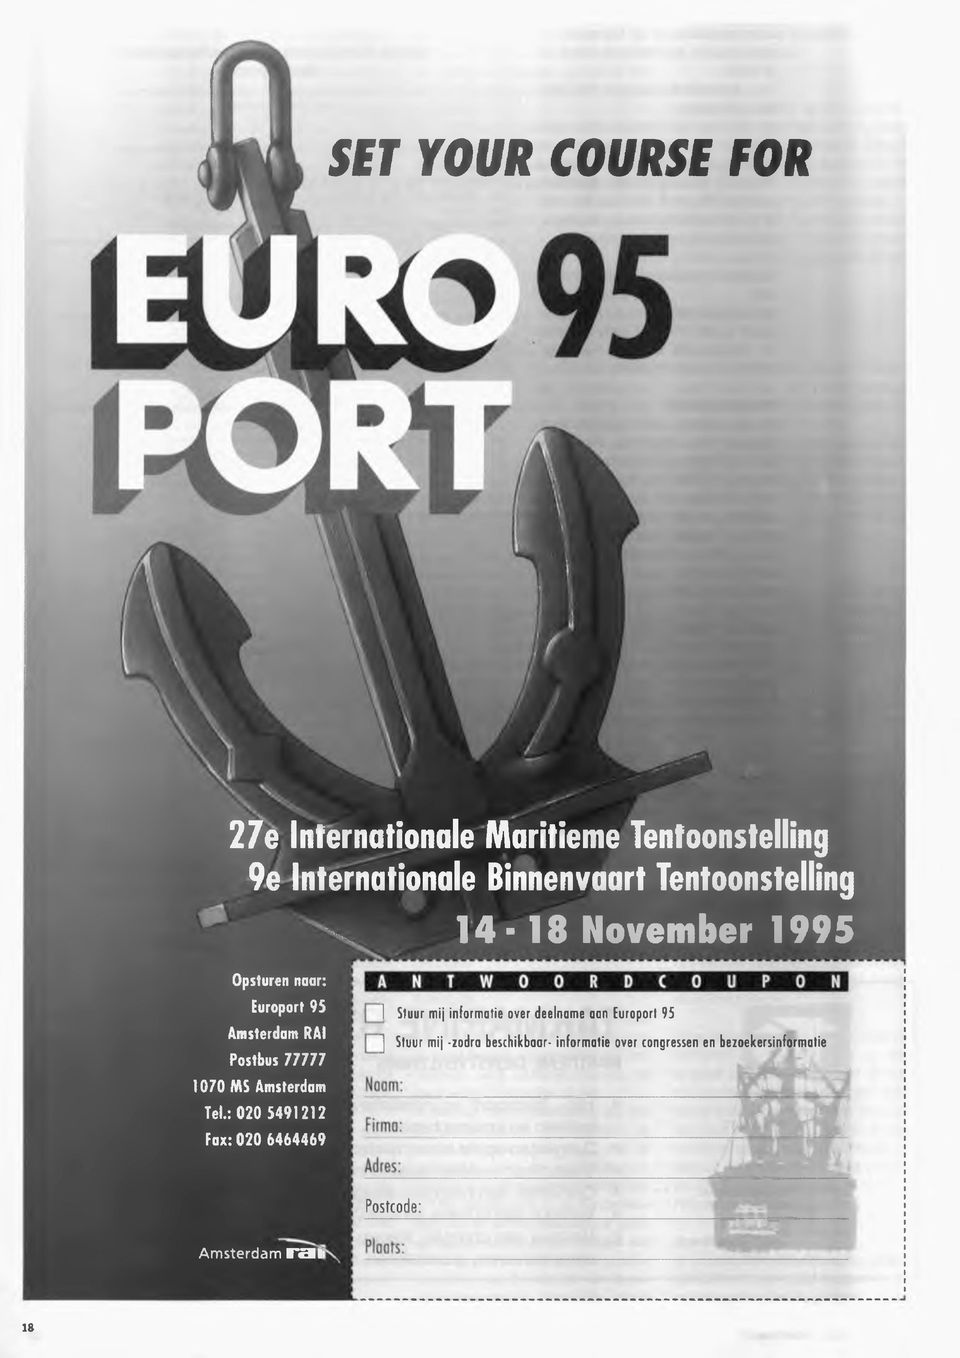 Amsterdam ] Stuur m ij inform atie over deelname aan Europort 95 ] Stuur mij -zodra beschikbaar- inform atie